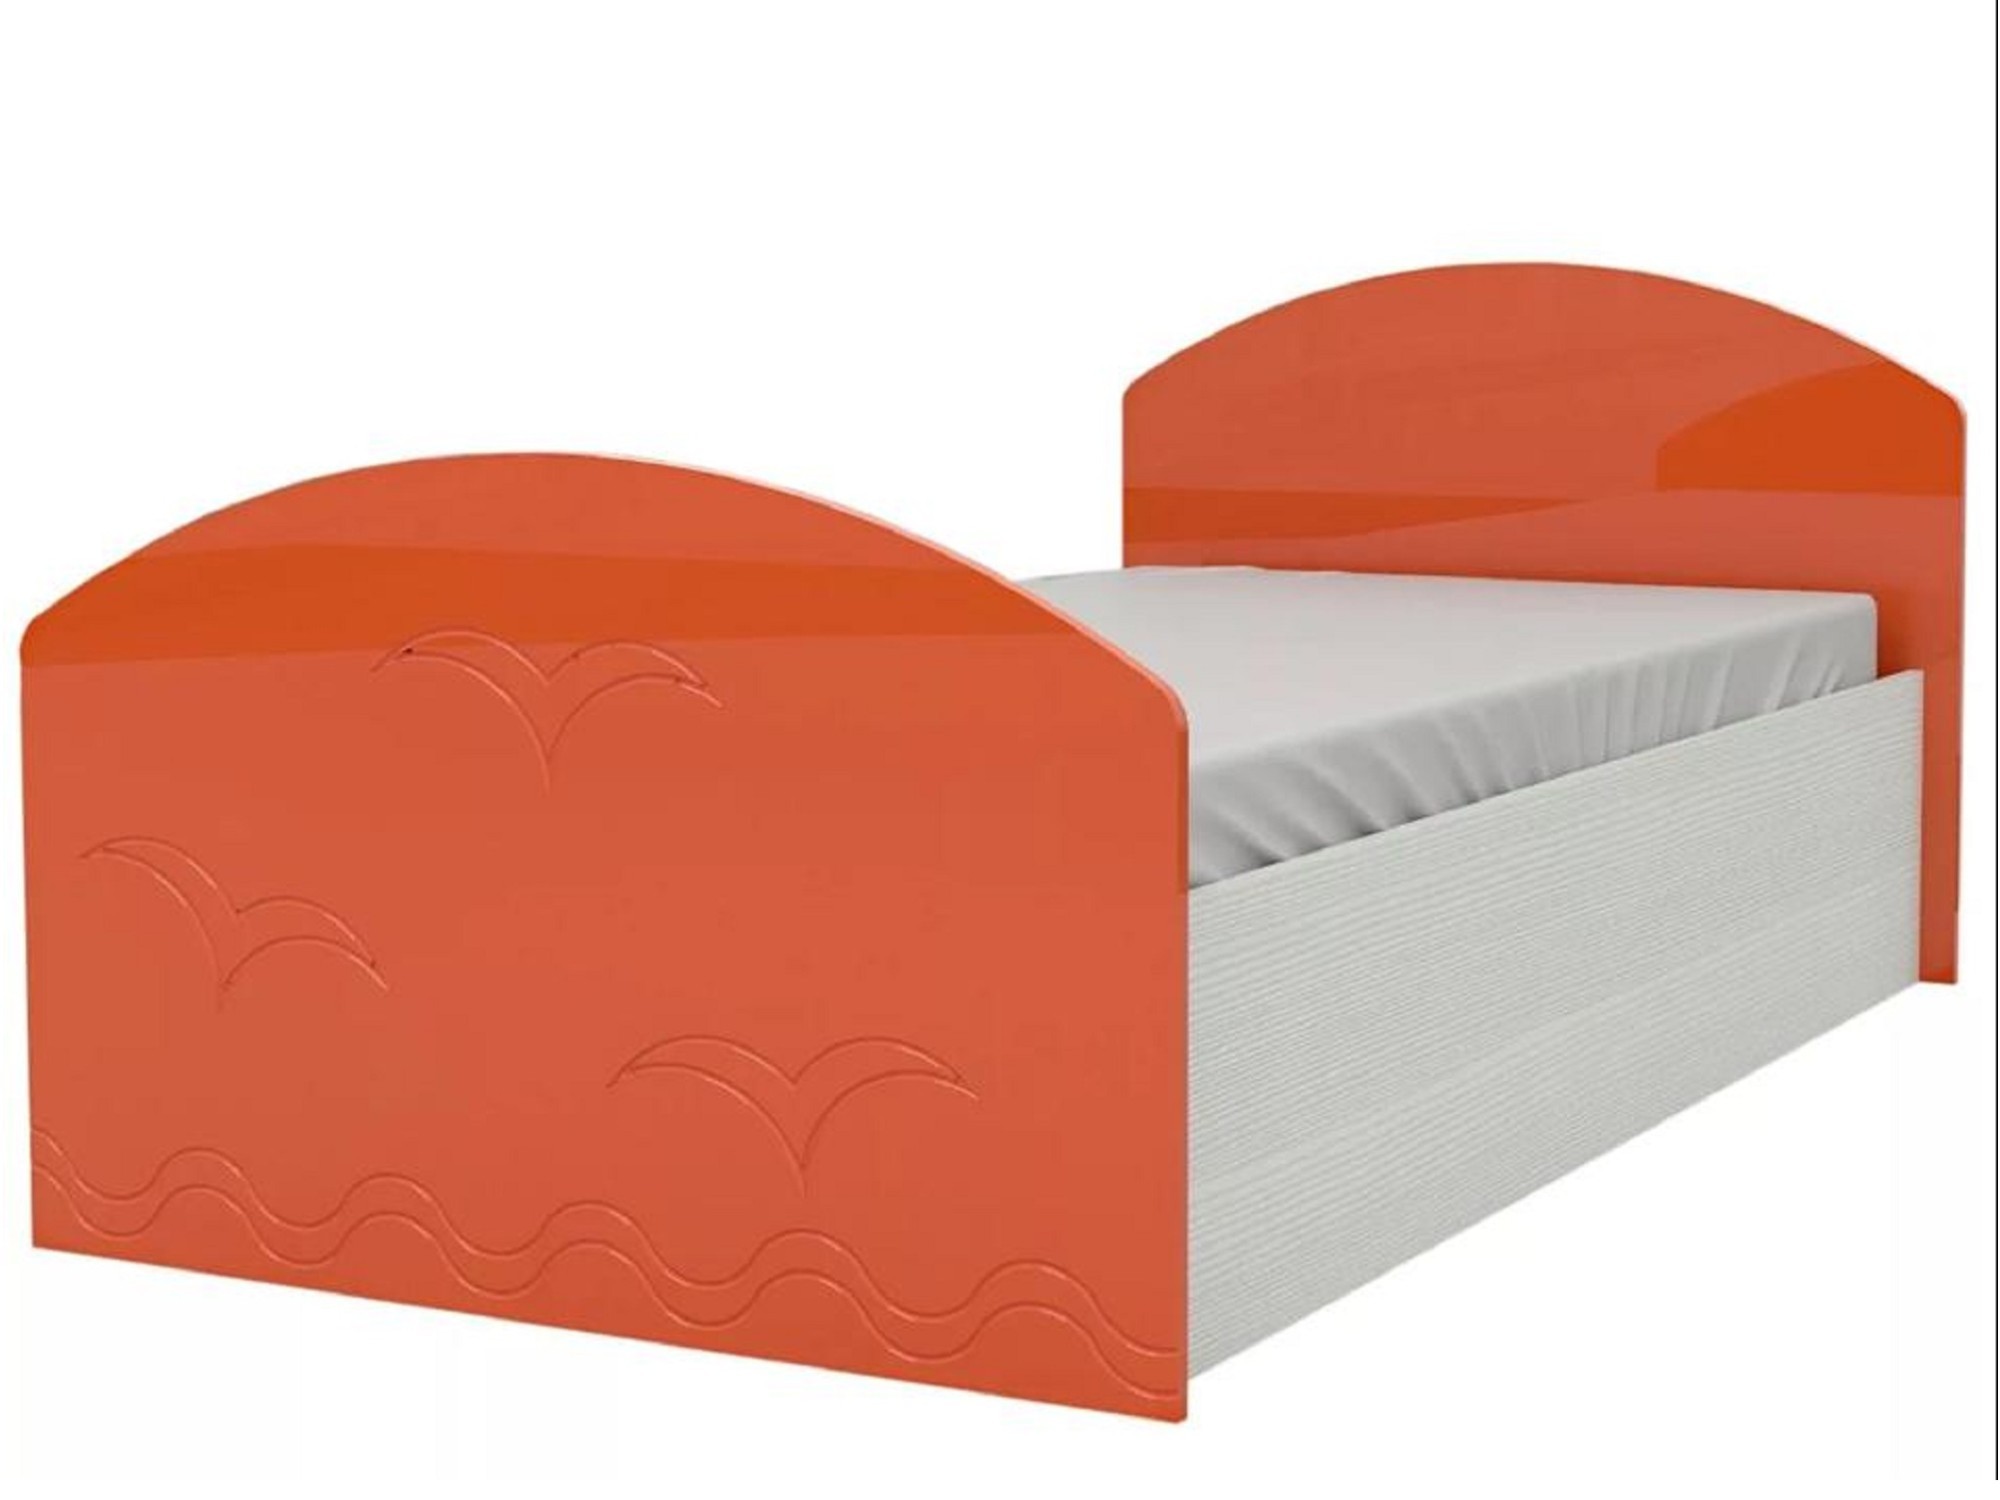 Юниор-2 Детская кровать 80, металлик (Оранжевый металлик, Дуб белёный) Оранжевый металлик, МДФ, ЛДСП юниор 2 детская кровать 80 металлик розовый металлик дуб белёный дуб белёный мдф лдсп